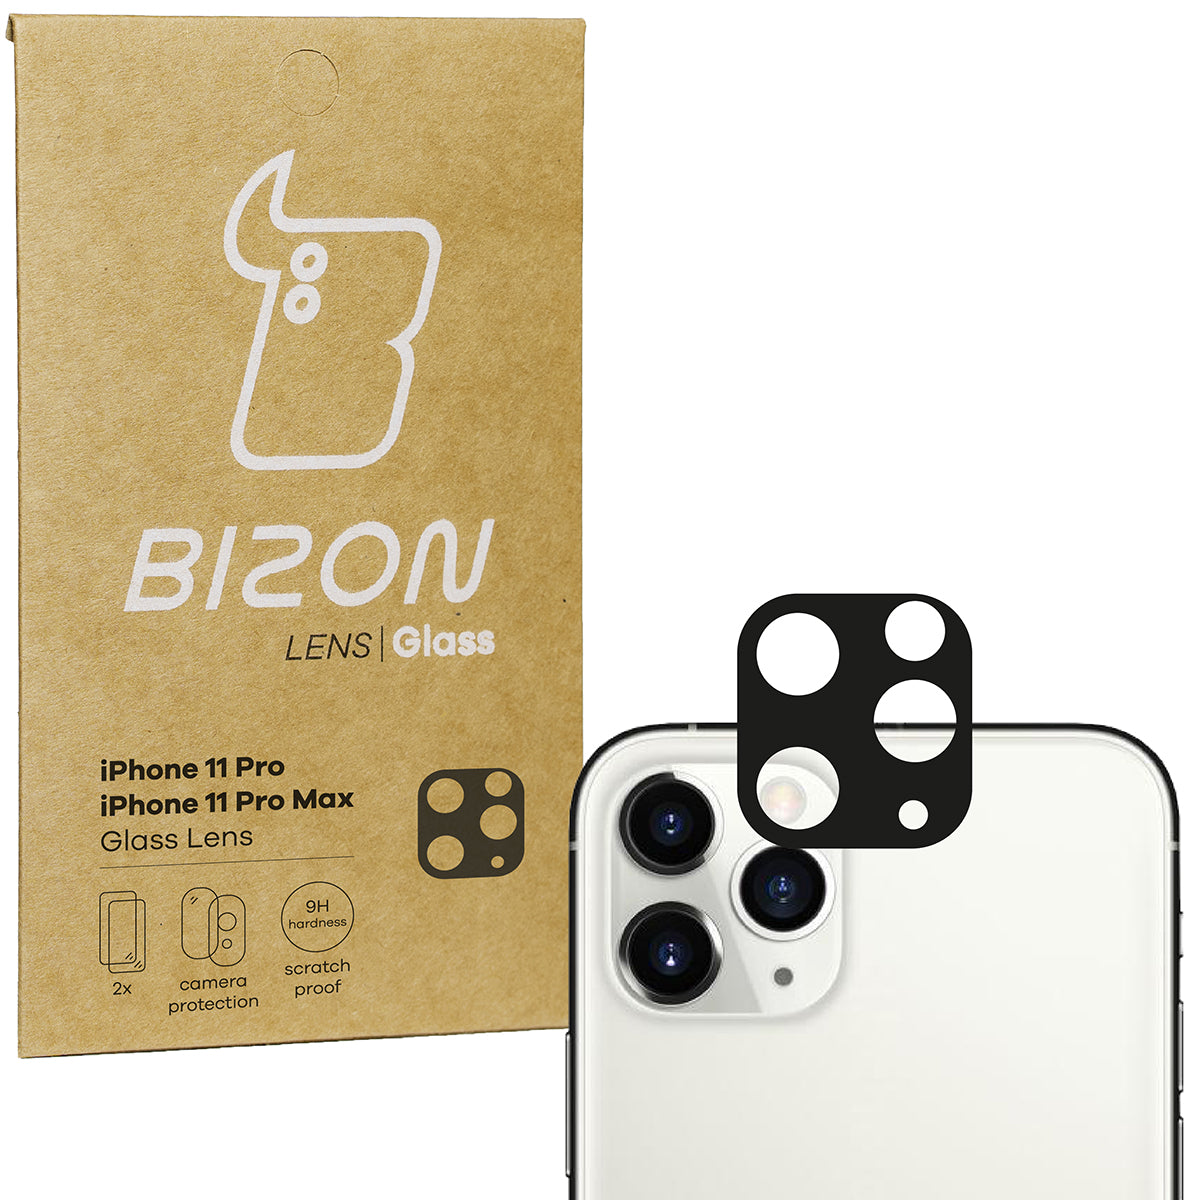 Glas für die Kamera Bizon Glass Lens für iPhone 11 Pro Max / 11 Pro, 2 Stück